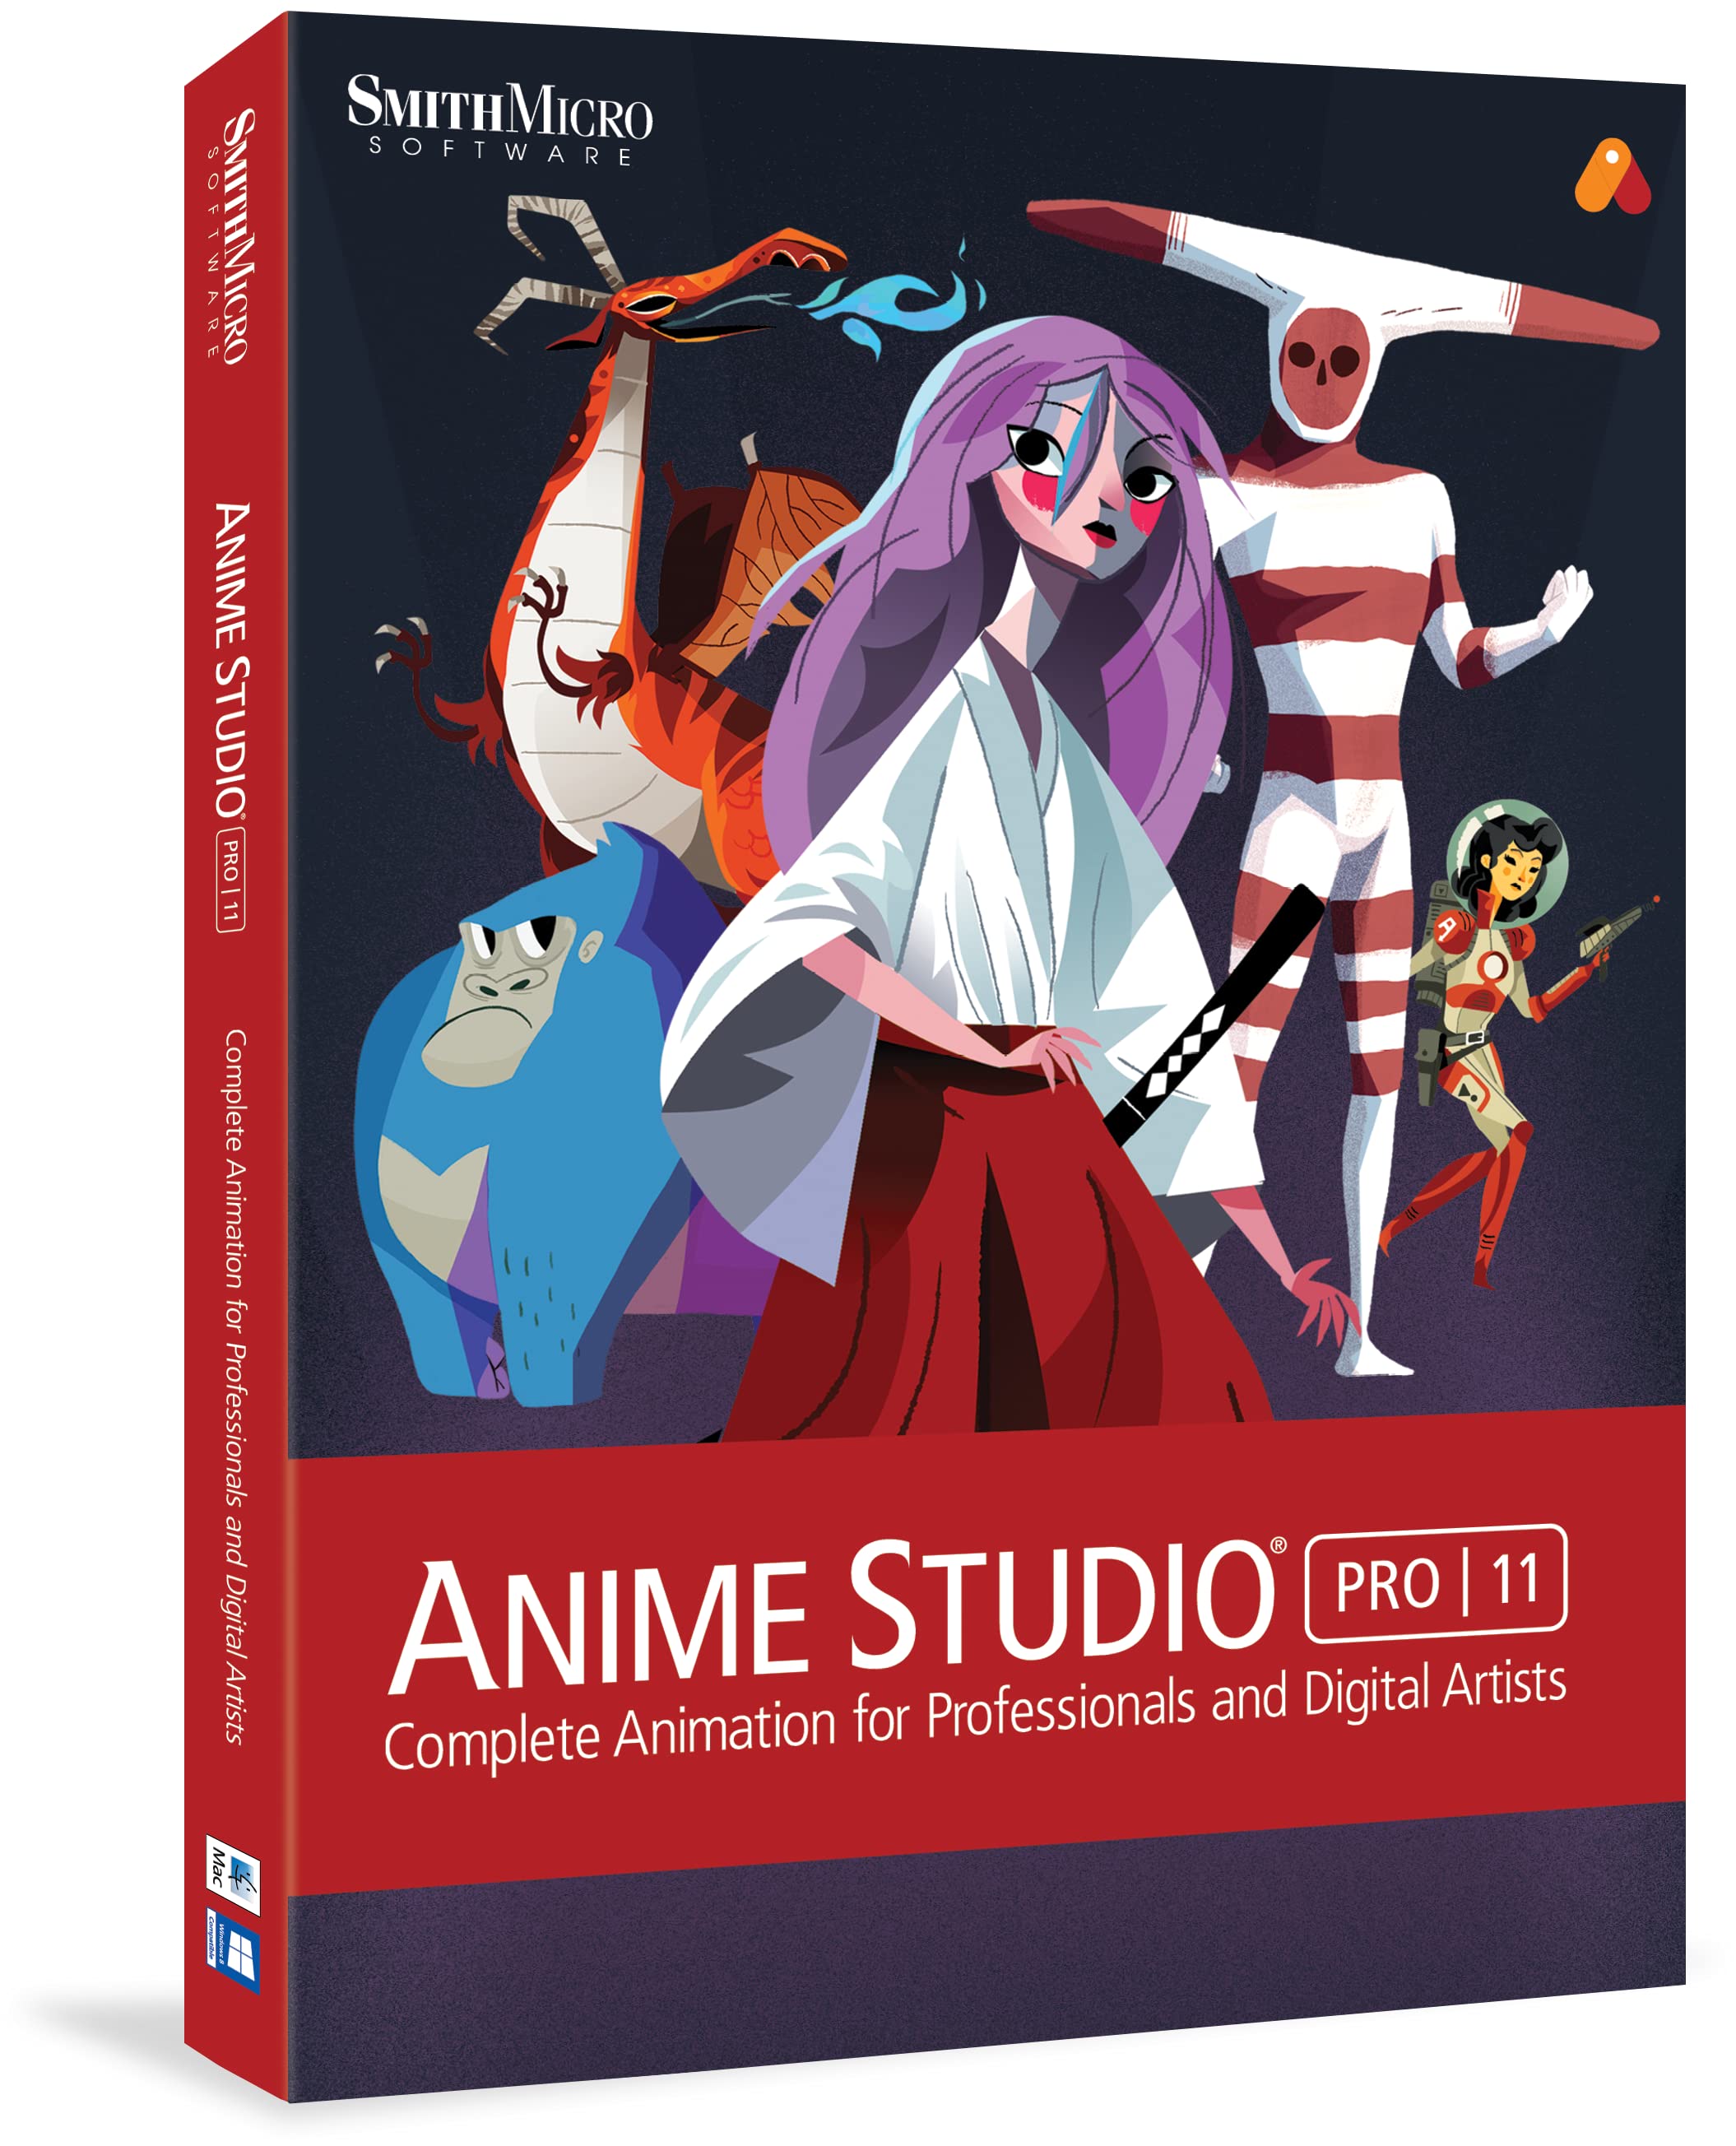 Anime studio pro mac download torrent